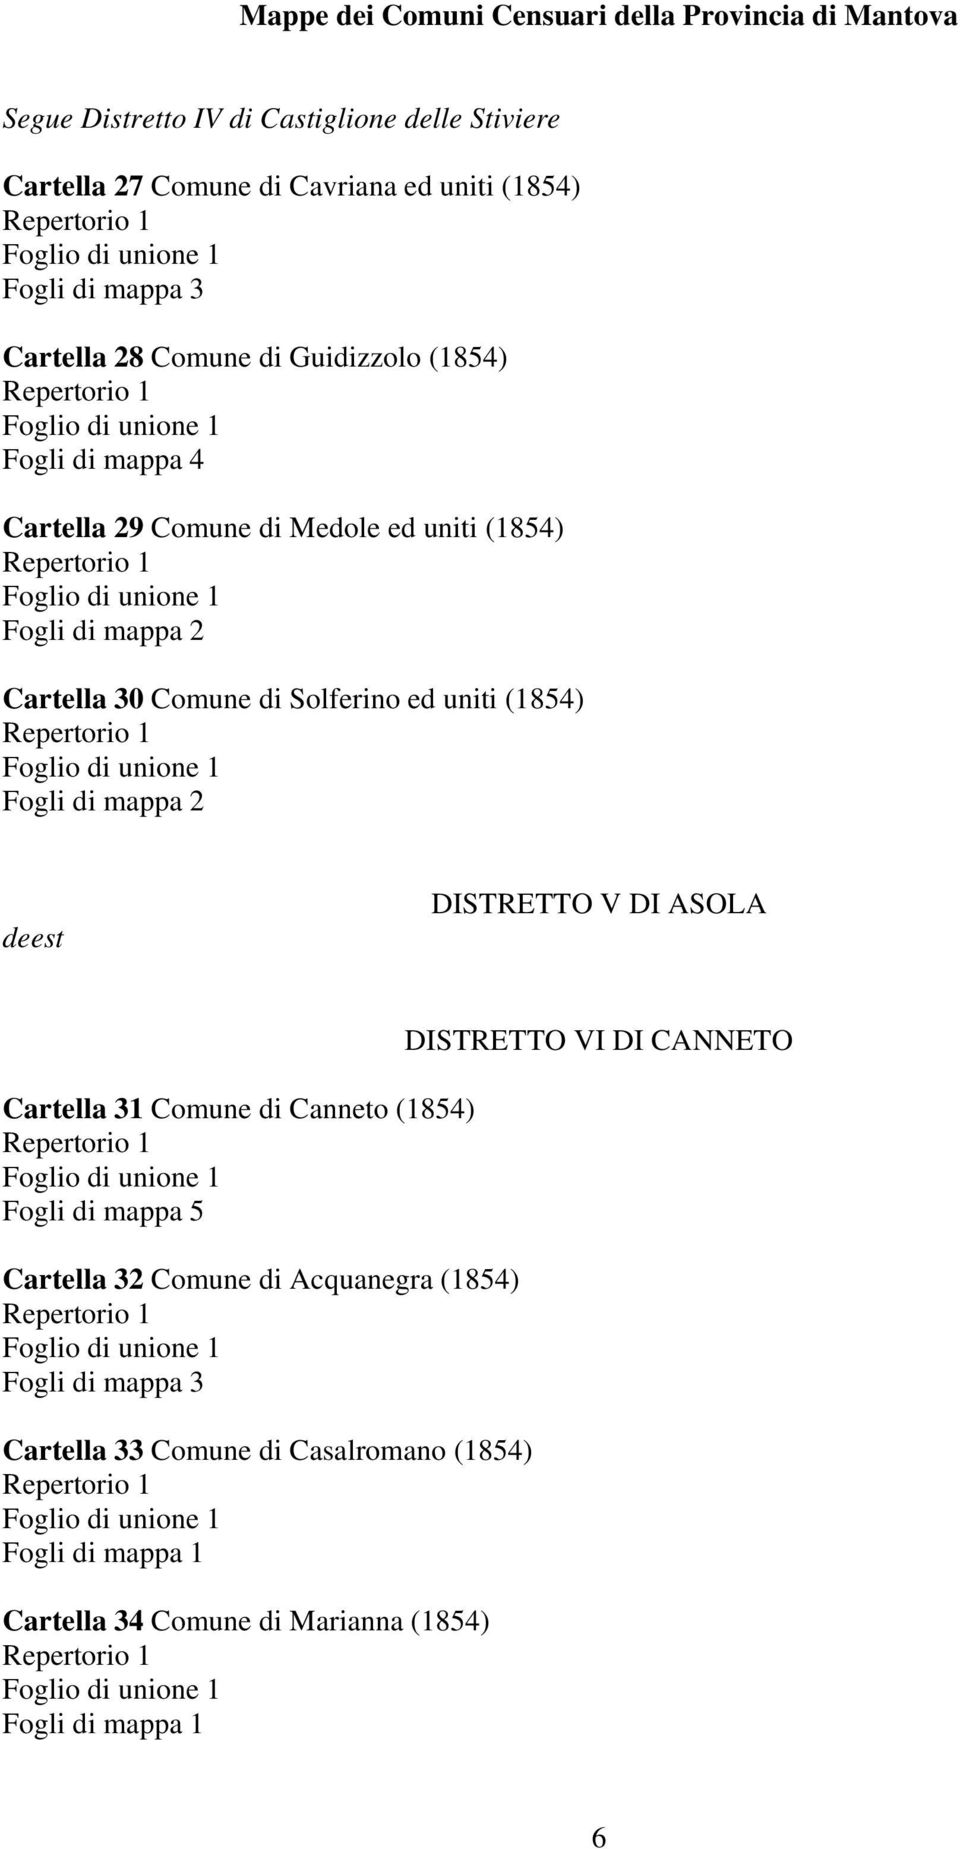 (1854) Fogli di mappa 2 deest DISTRETTO V DI ASOLA Cartella 31 Comune di Canneto (1854) Cartella 32 Comune di Acquanegra